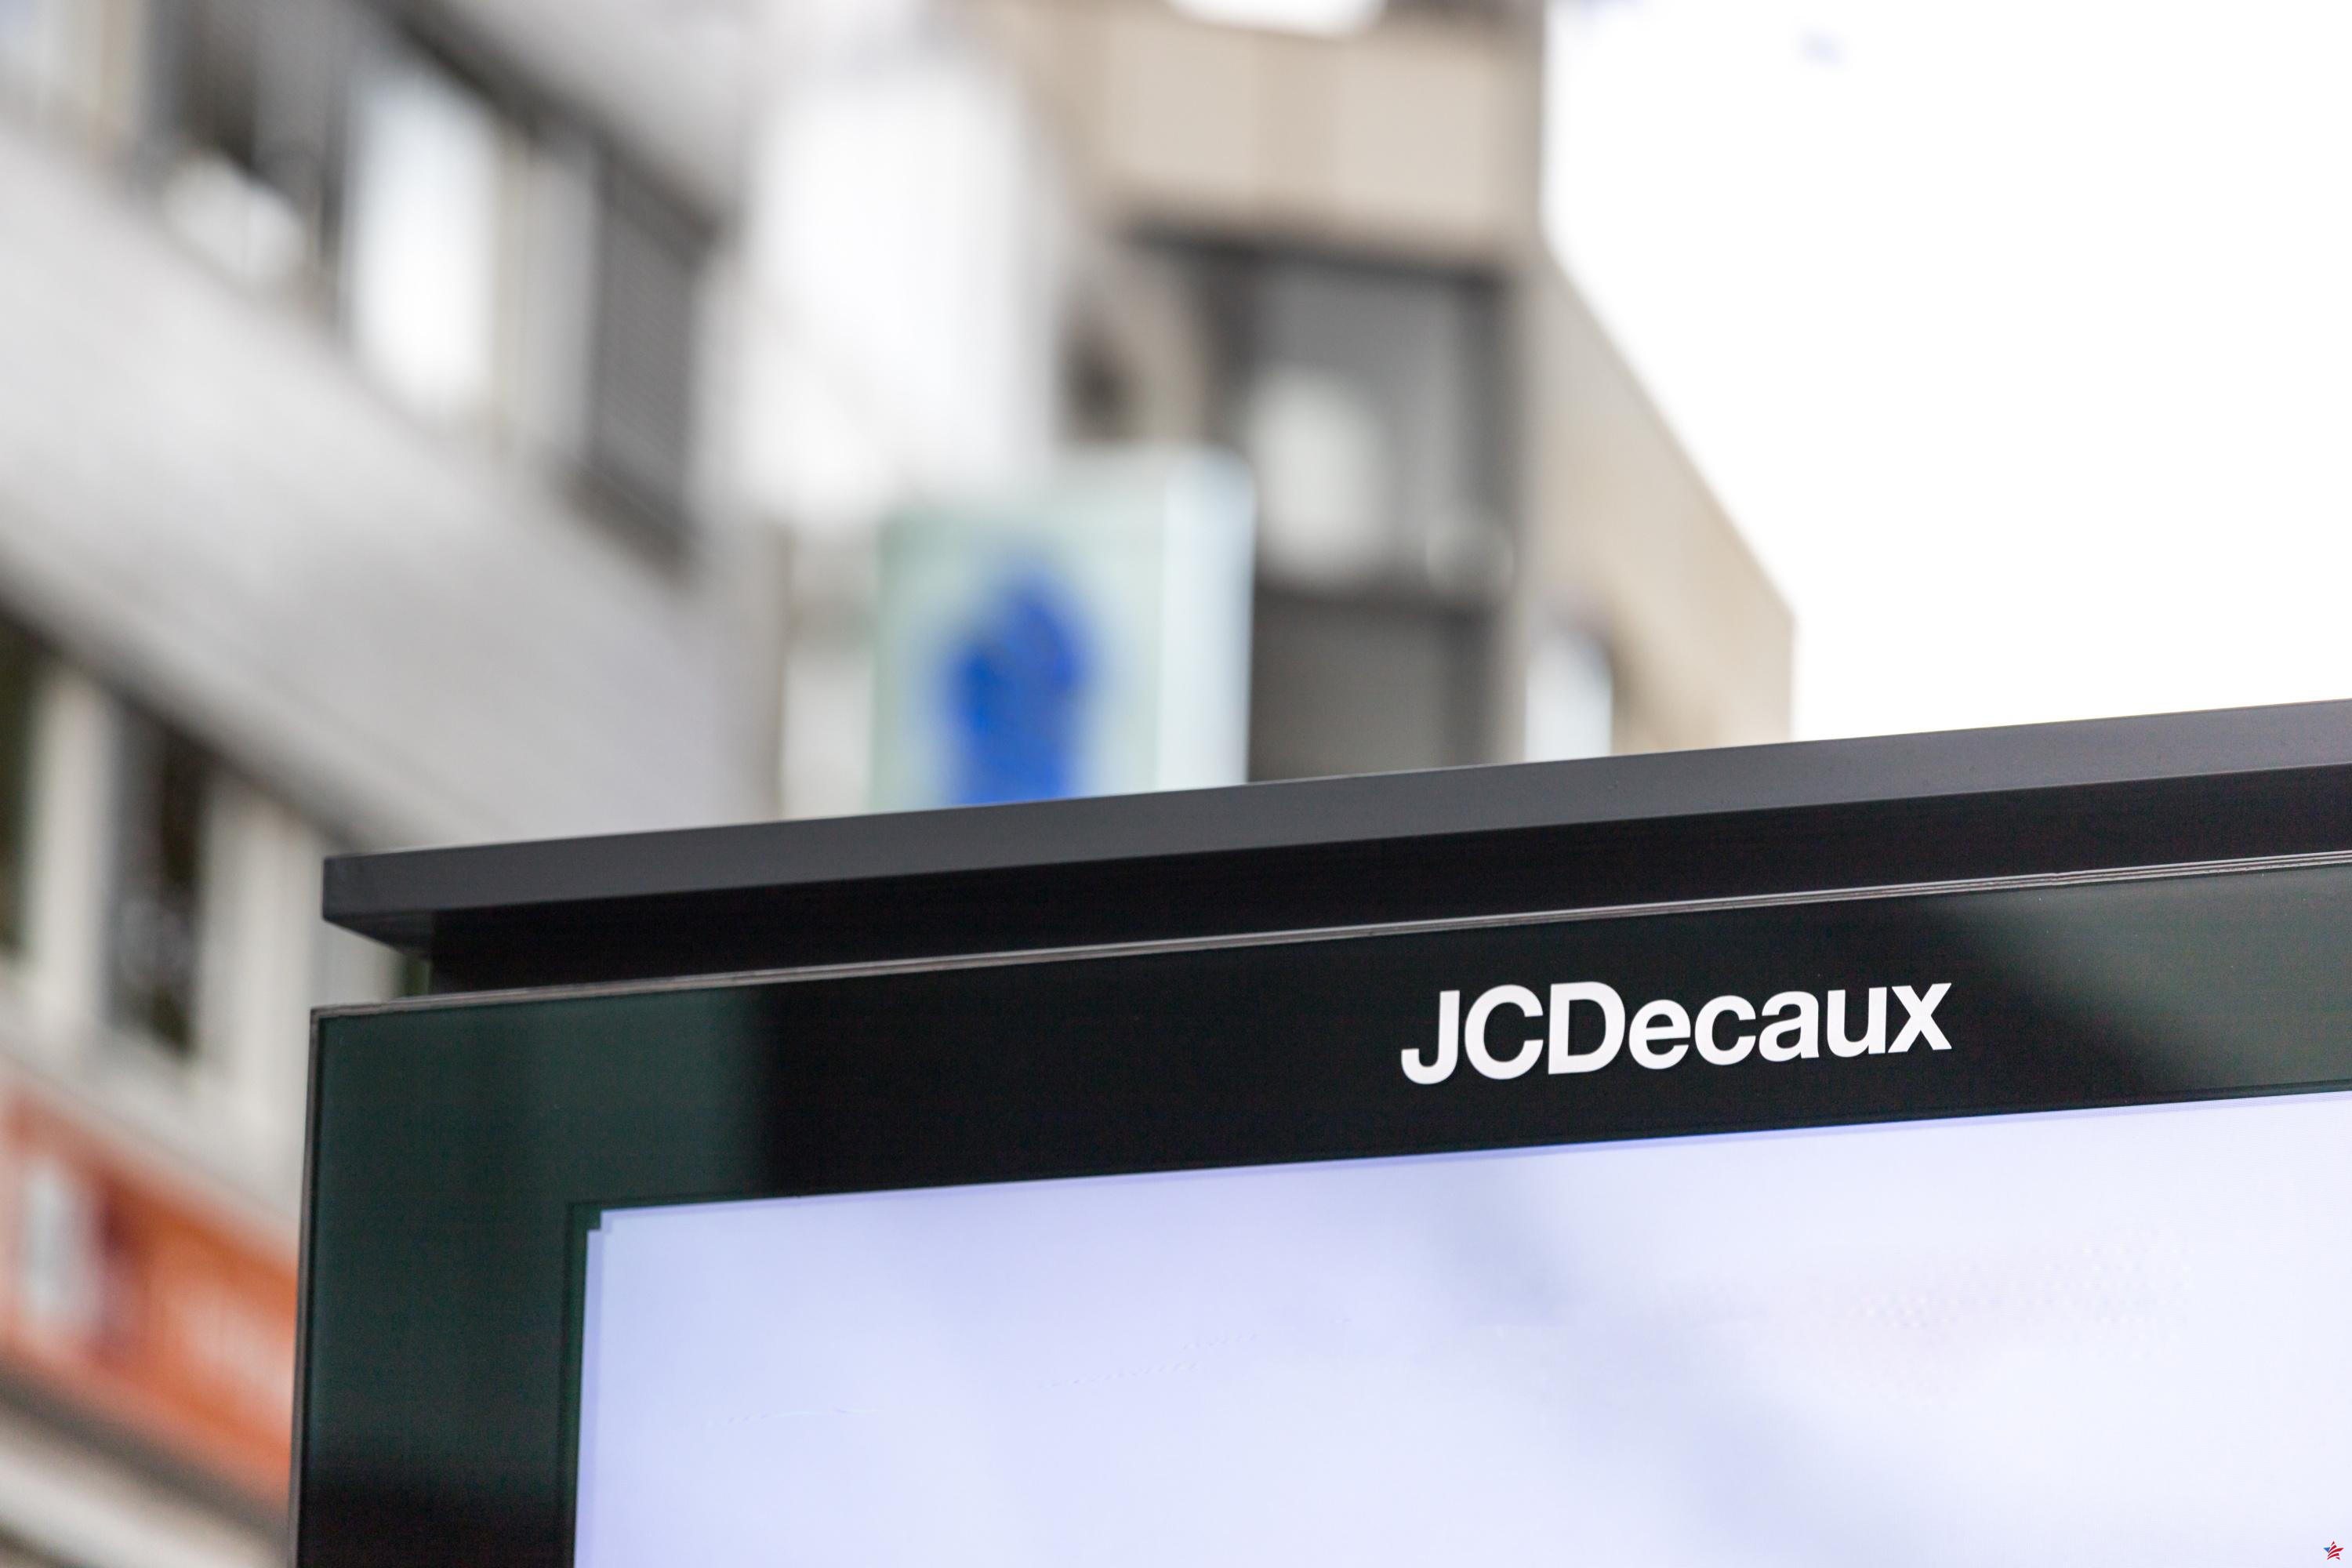 En buena forma, JCDecaux ilustra la salud del sector del display publicitario